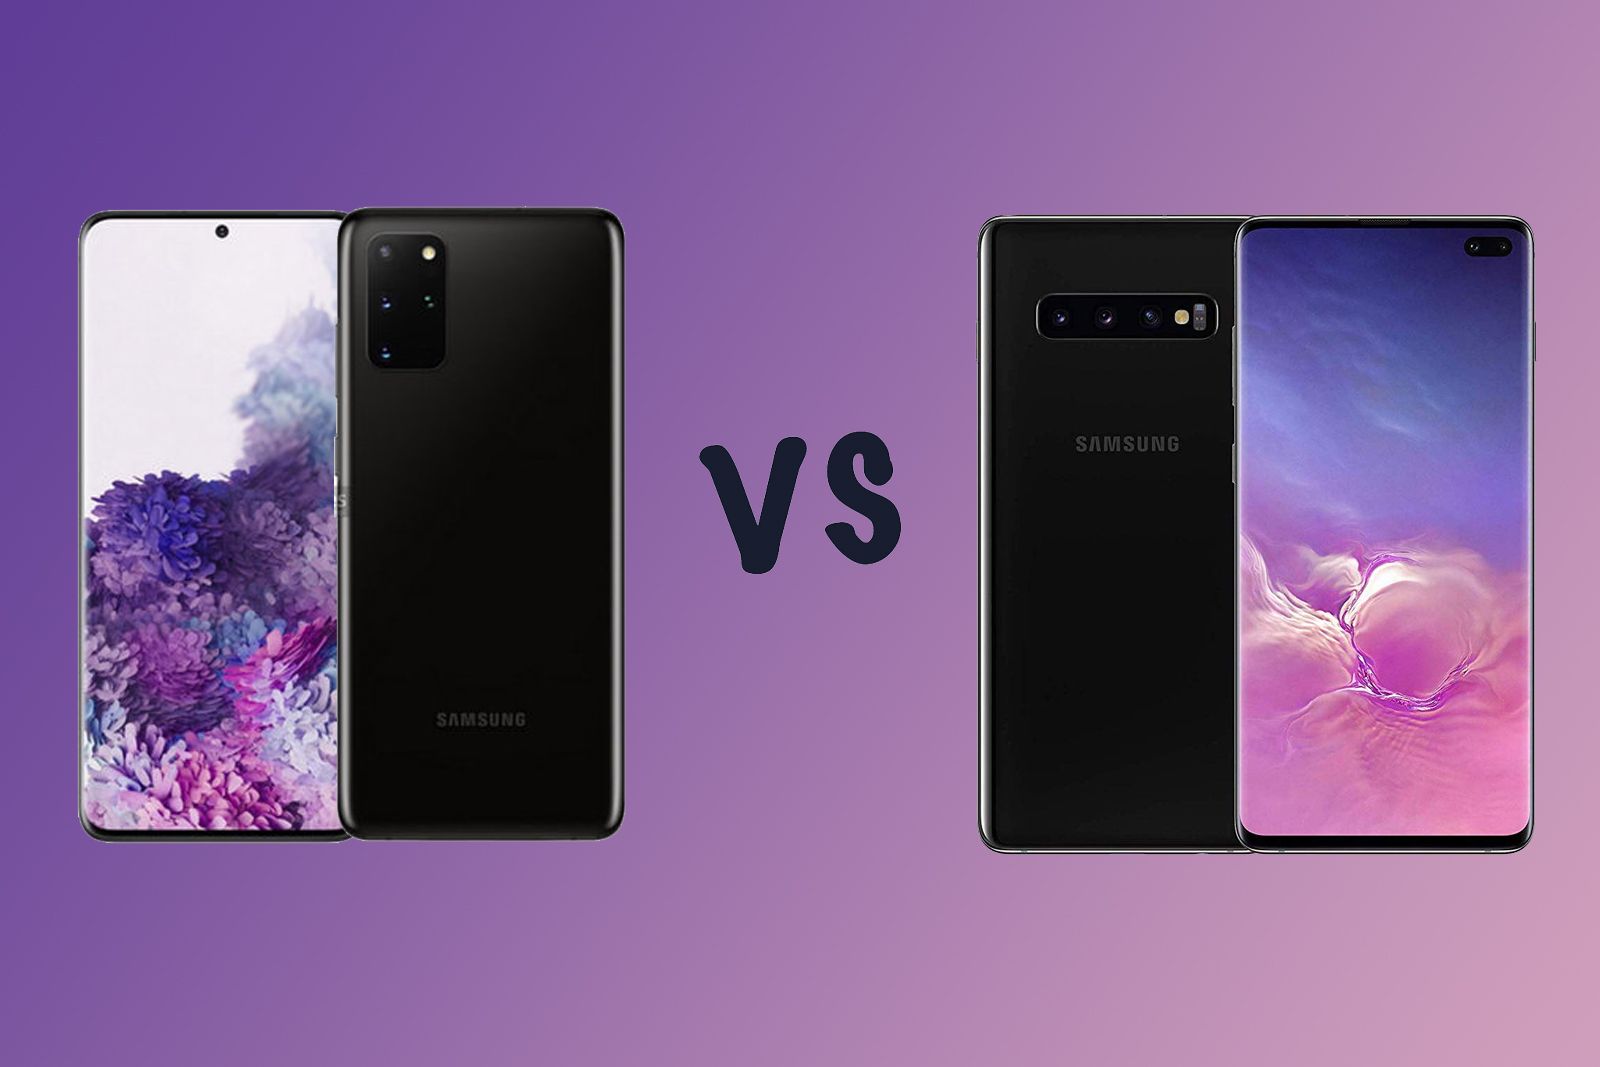 Samsung Galaxy S20 vs Galaxy S10 Should you upgrade image 1